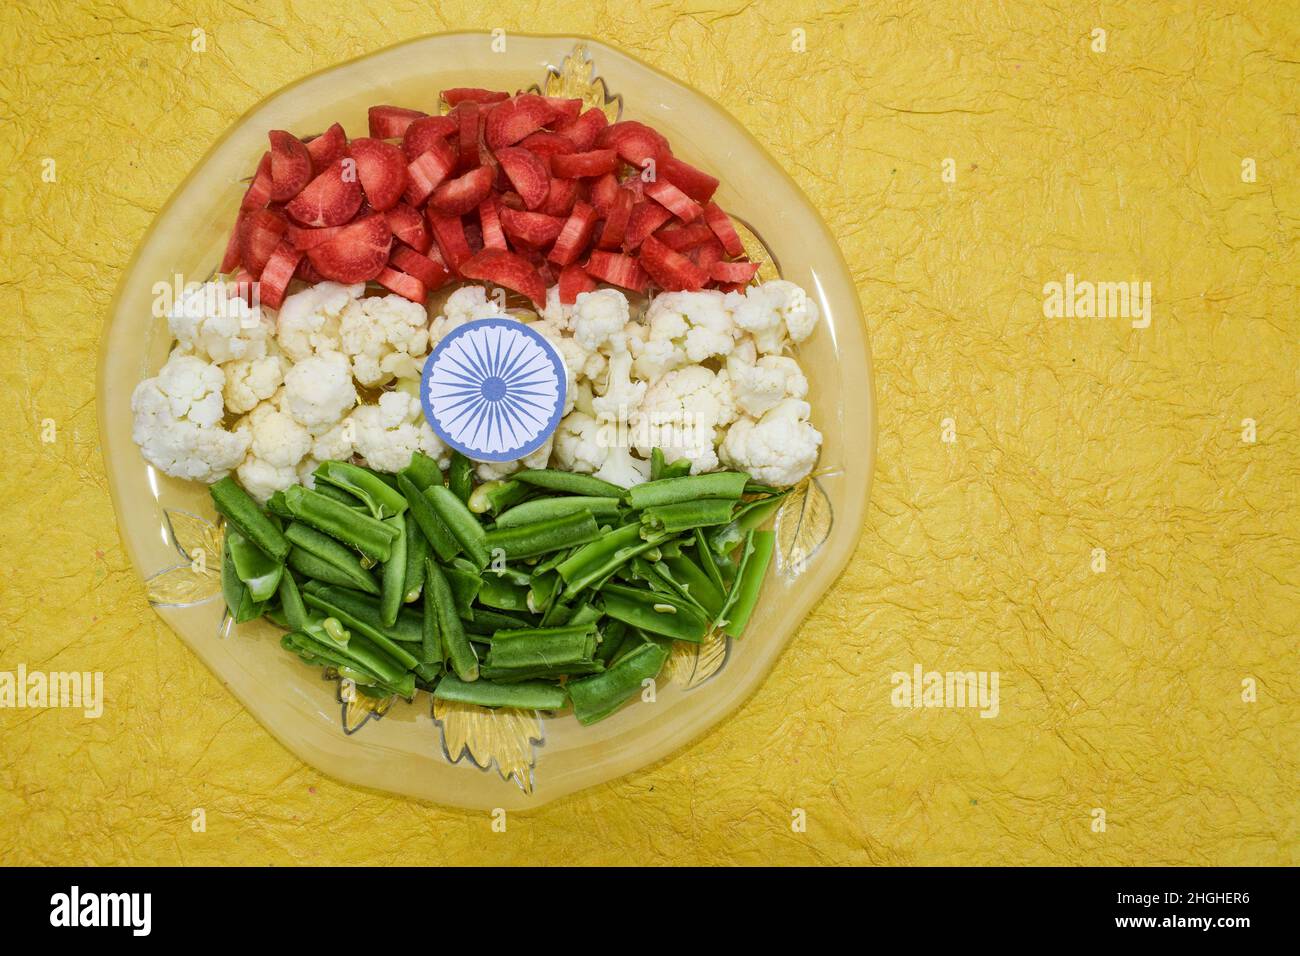 Indien Independence Day 15 August Konzept: Indische Nationalflagge Tricolor aus Gemüse. Draufsicht. Weißer Hintergrund. Tiranga aus rohem Gemüse Stockfoto